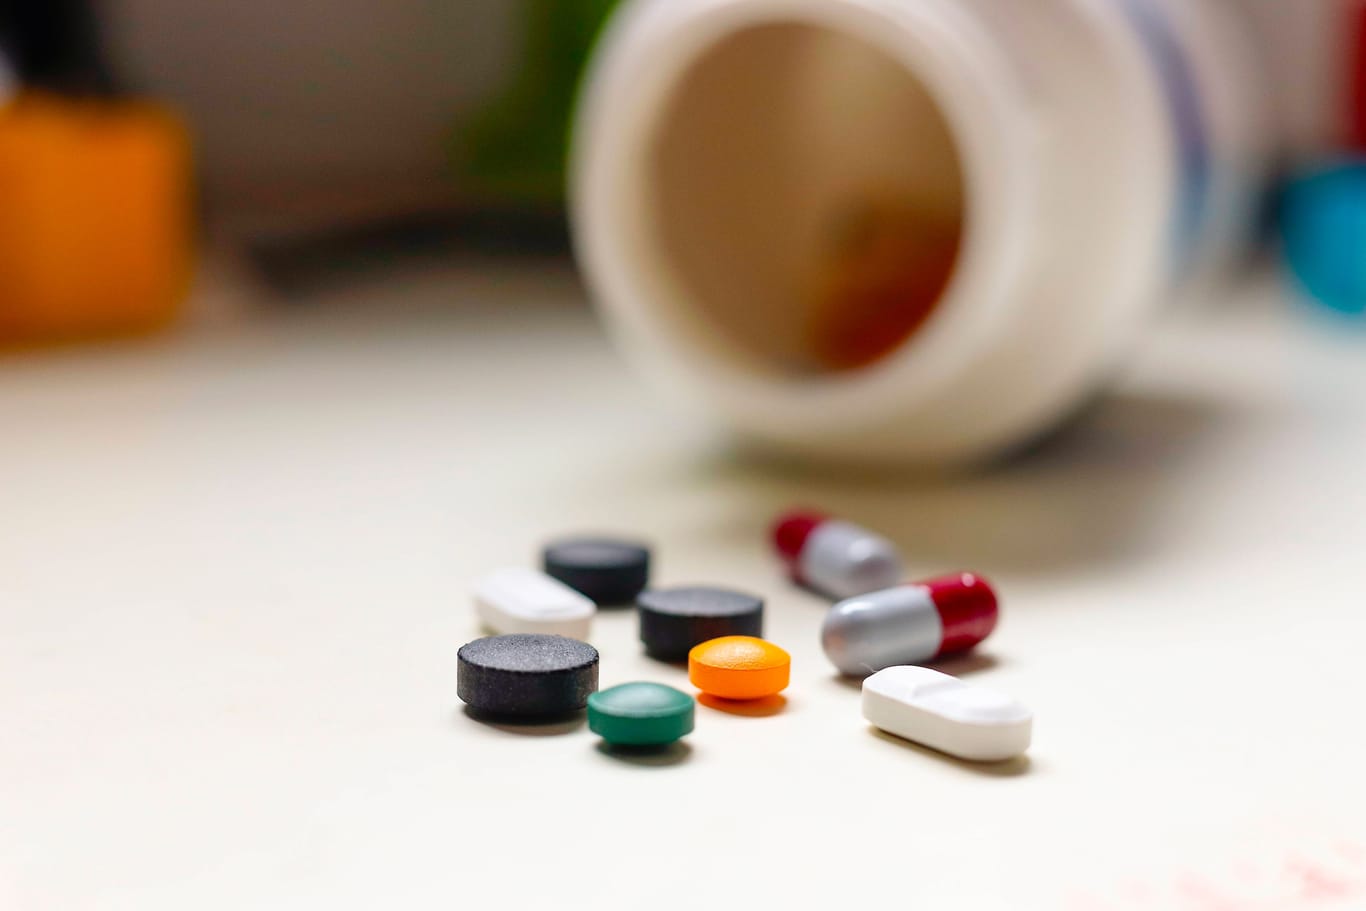 Bunte Pillen: Nicht selten werden Medikamente falsch verabreicht (Symbolbild).